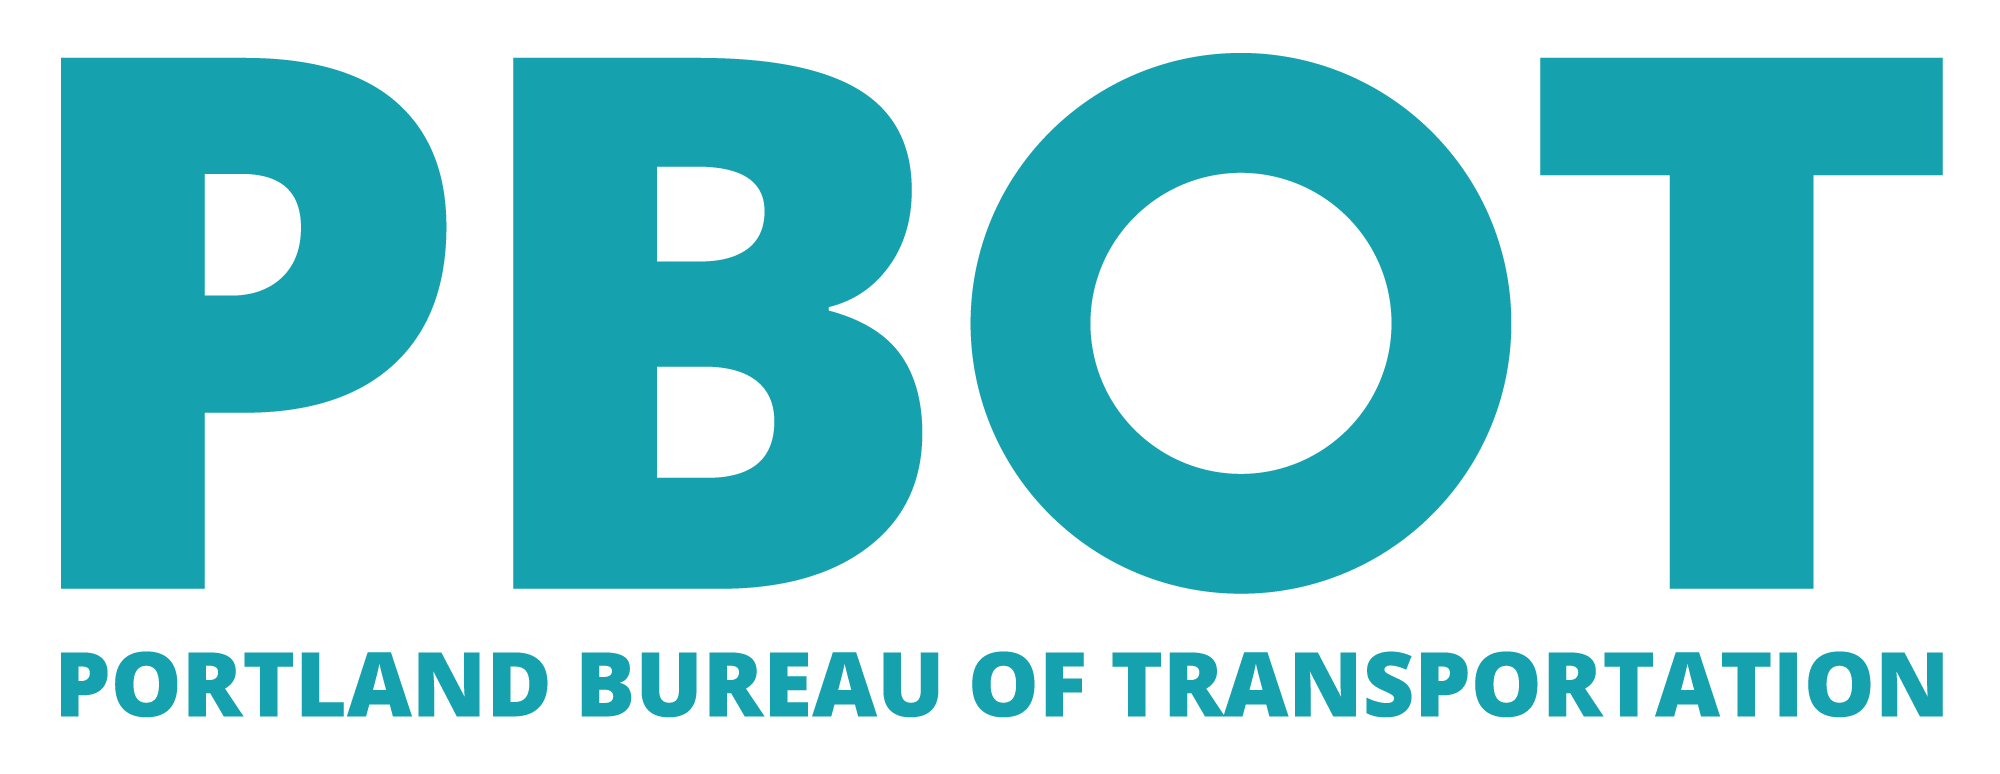 Portland Bureau of Transportation